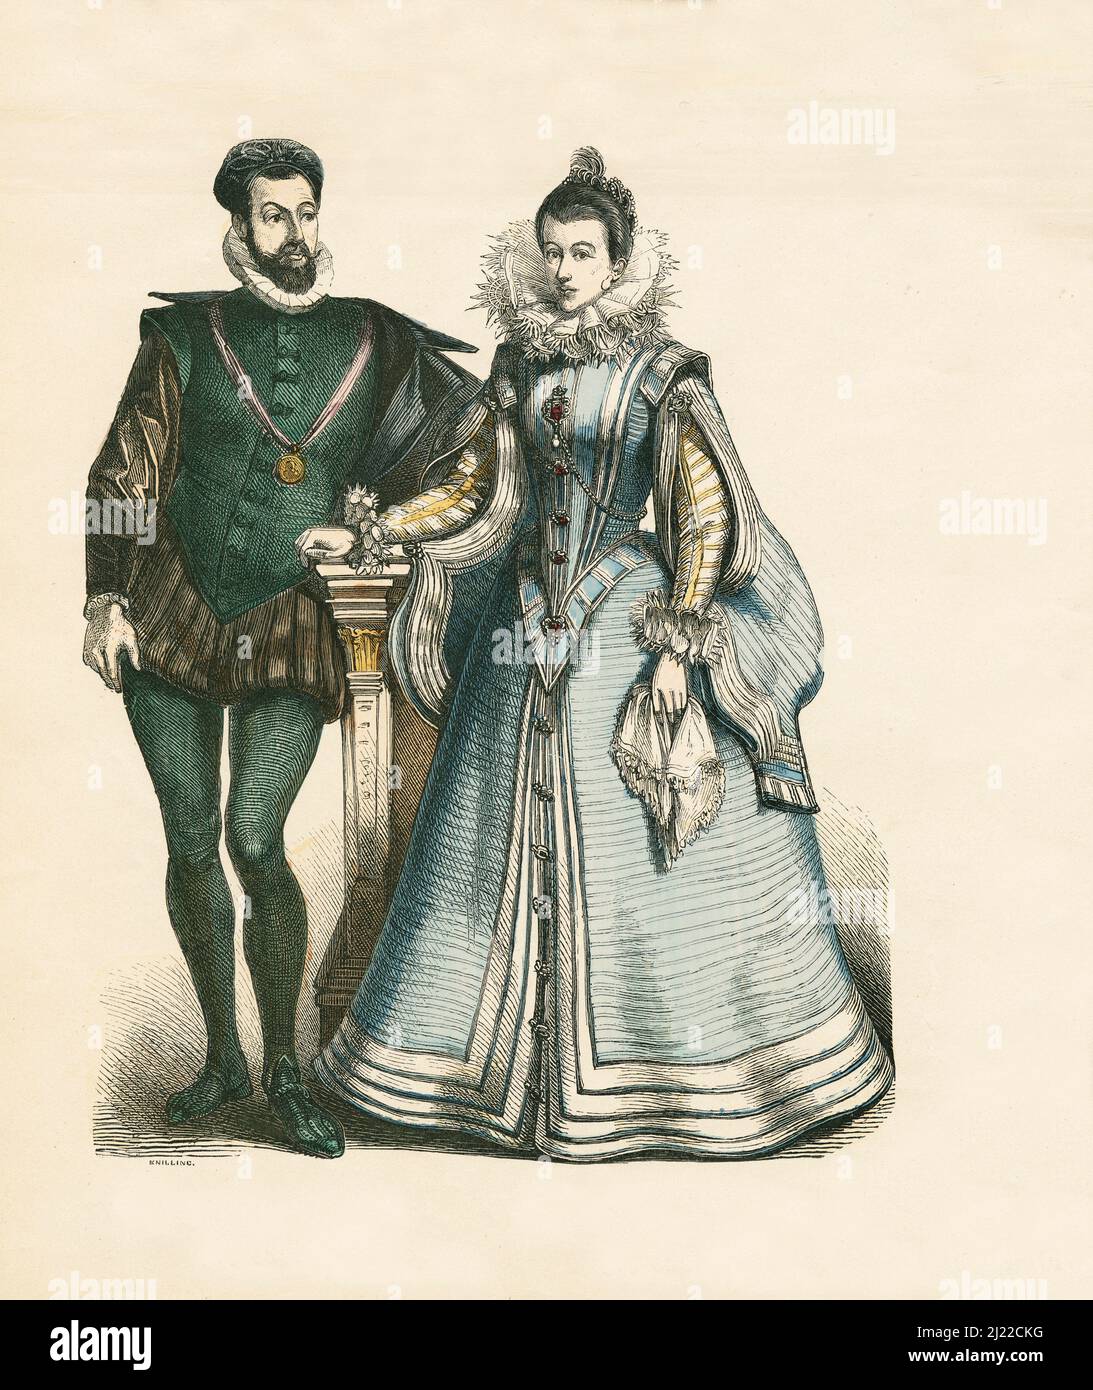 French Court Dress, secondo terzo del 16th secolo, Illustrazione, la Storia del Costume, Braun & Schneider, Monaco di Baviera, Germania, 1861-1880 Foto Stock